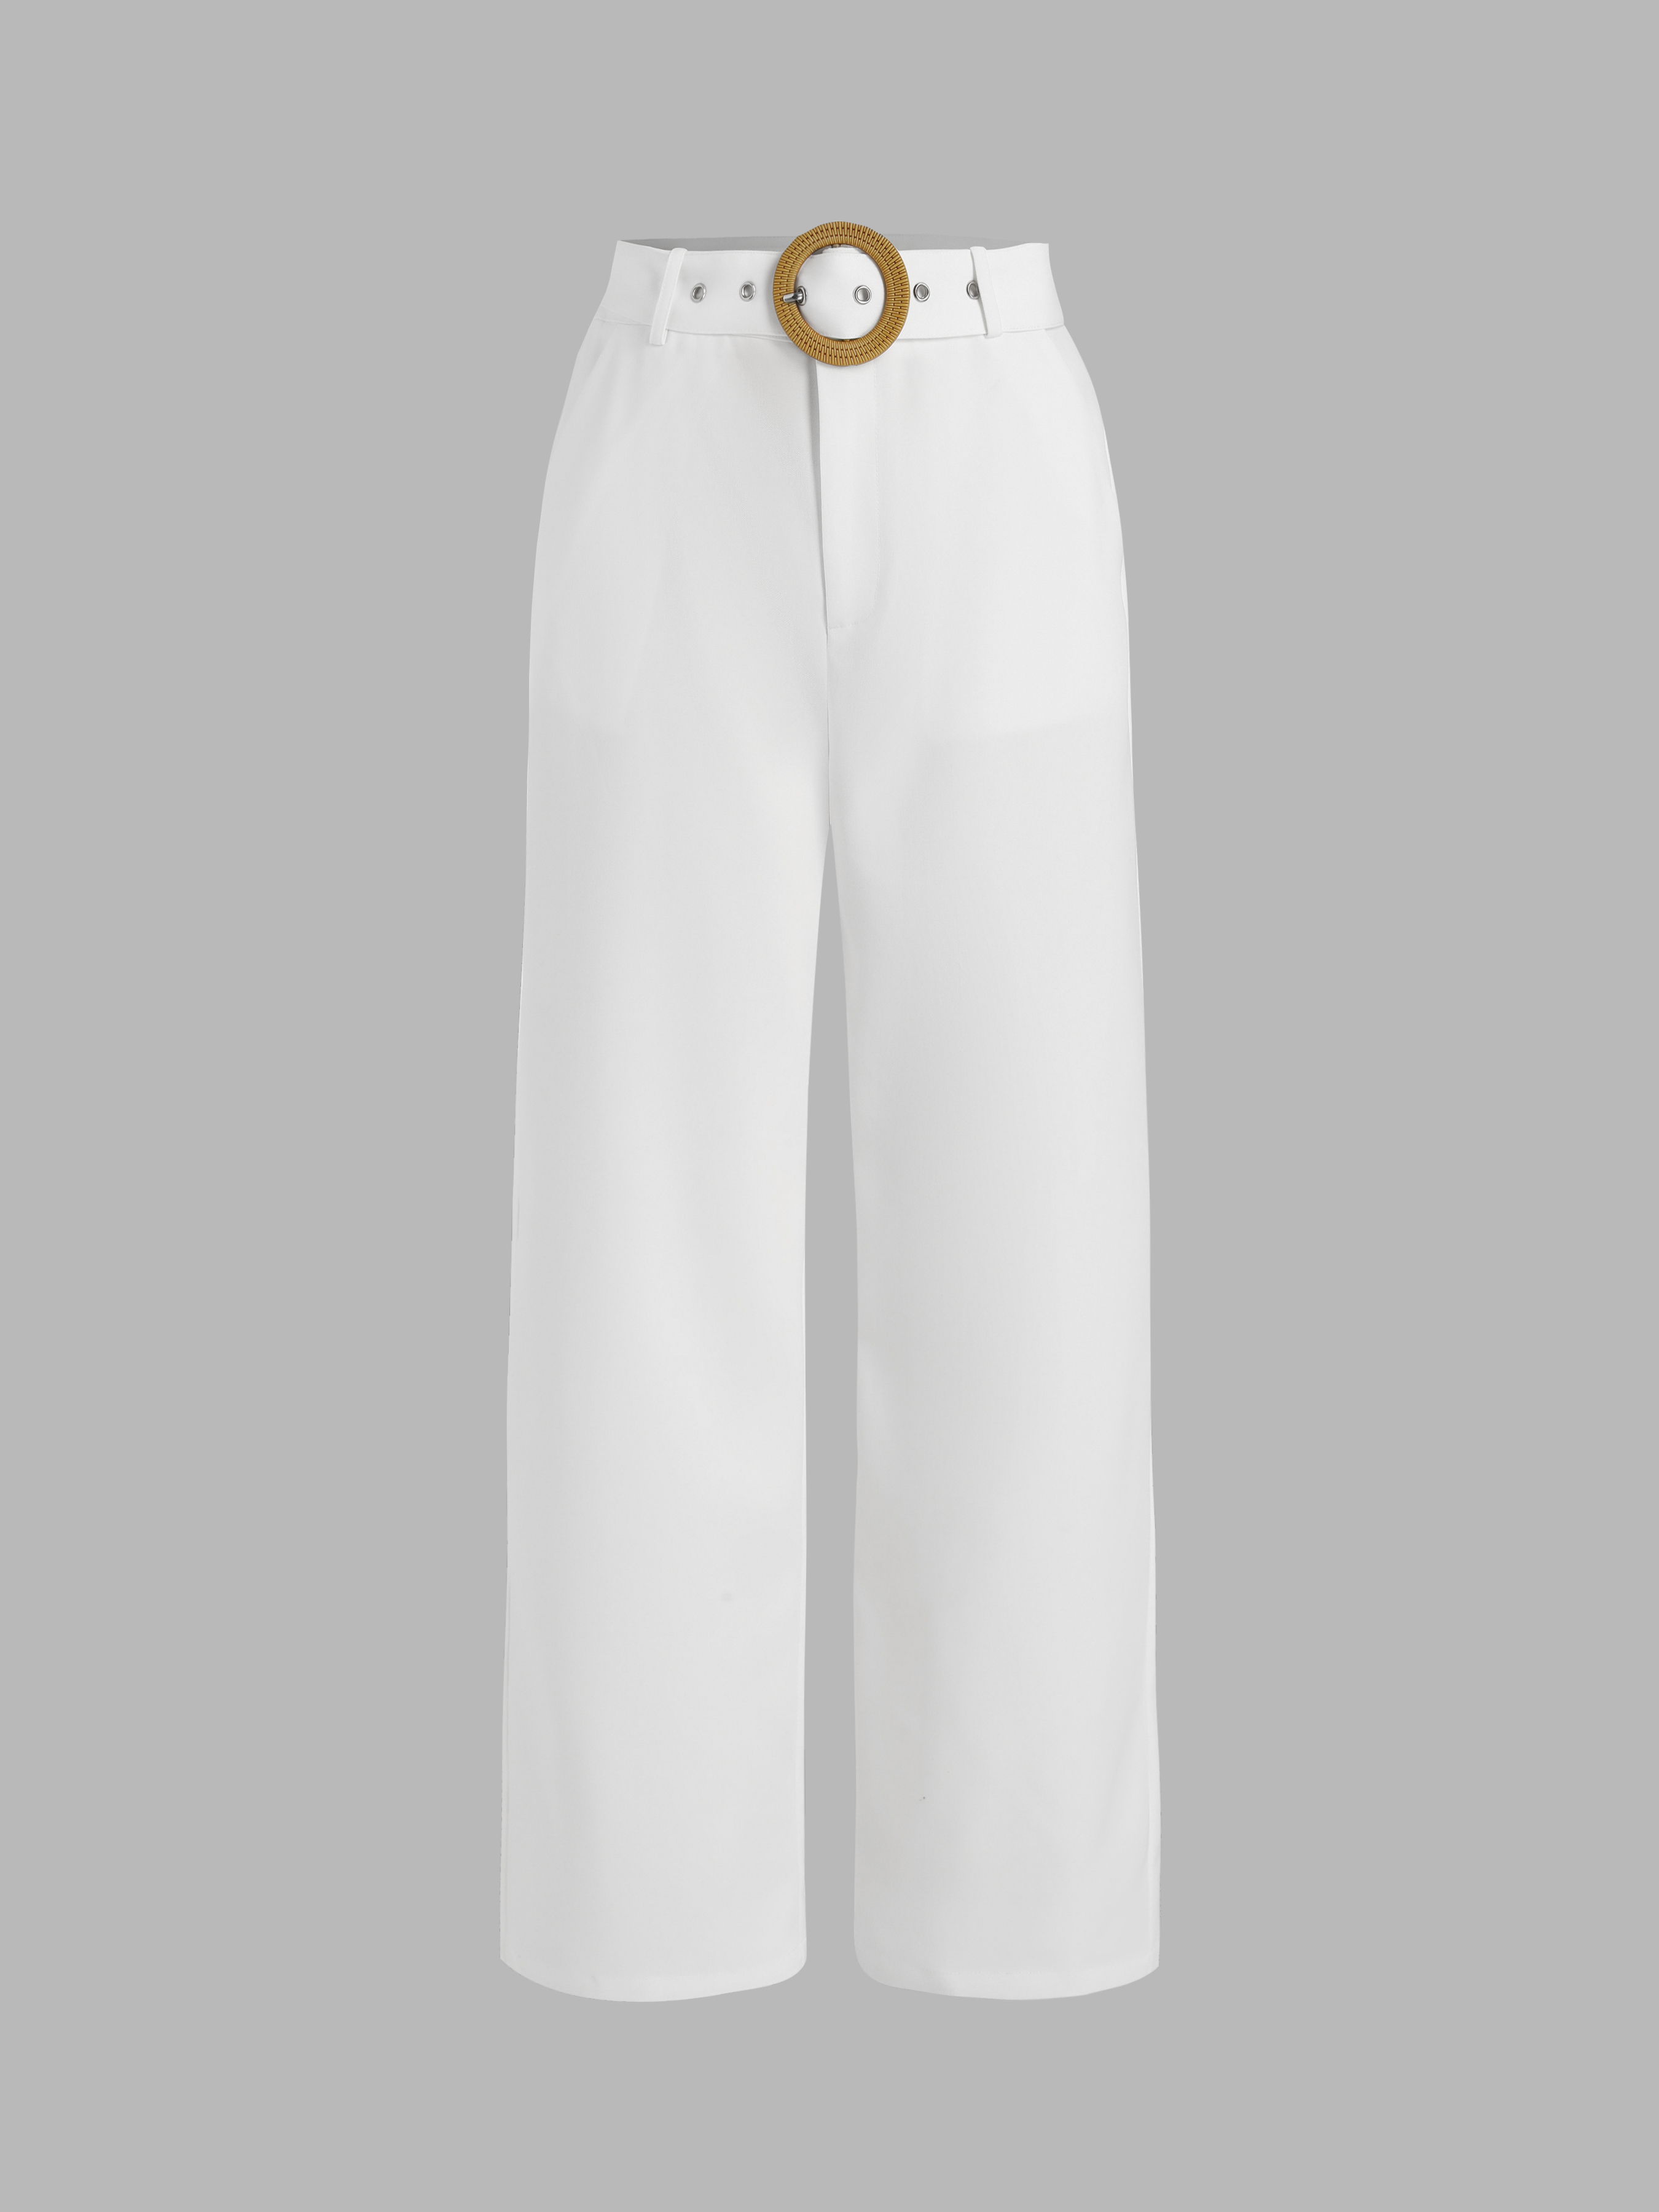 White Suit Set for Women, White Wide Leg Pants High Rise, Belted Blazer for  Women, White Trouser Blazer Set for Women, Office Wear Women - Etsy